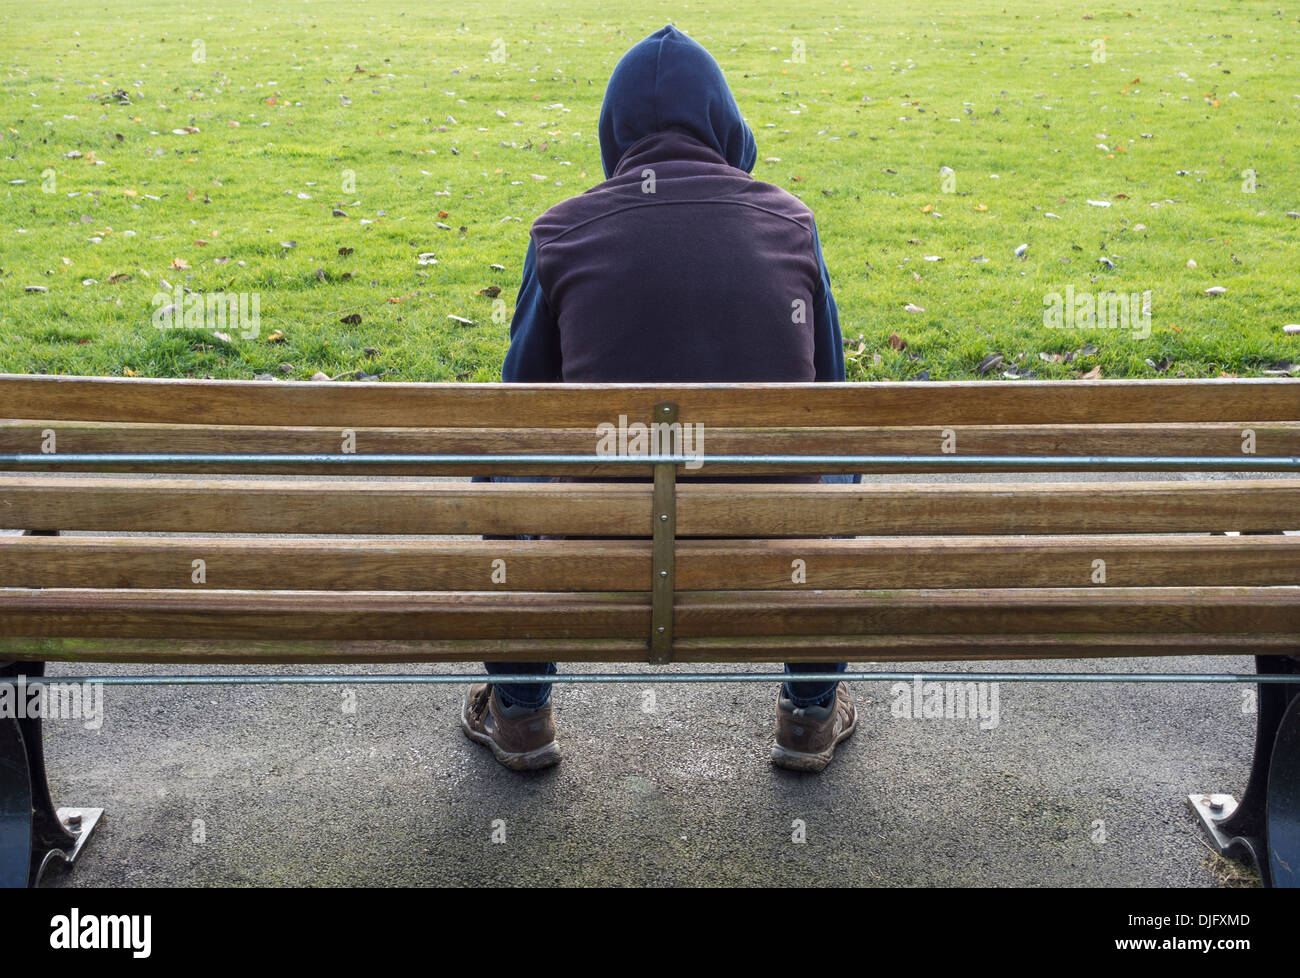 Personne portant un sweat à capuche assis sur le banc du parc. santé mentale, solitude, dépression... Banque D'Images